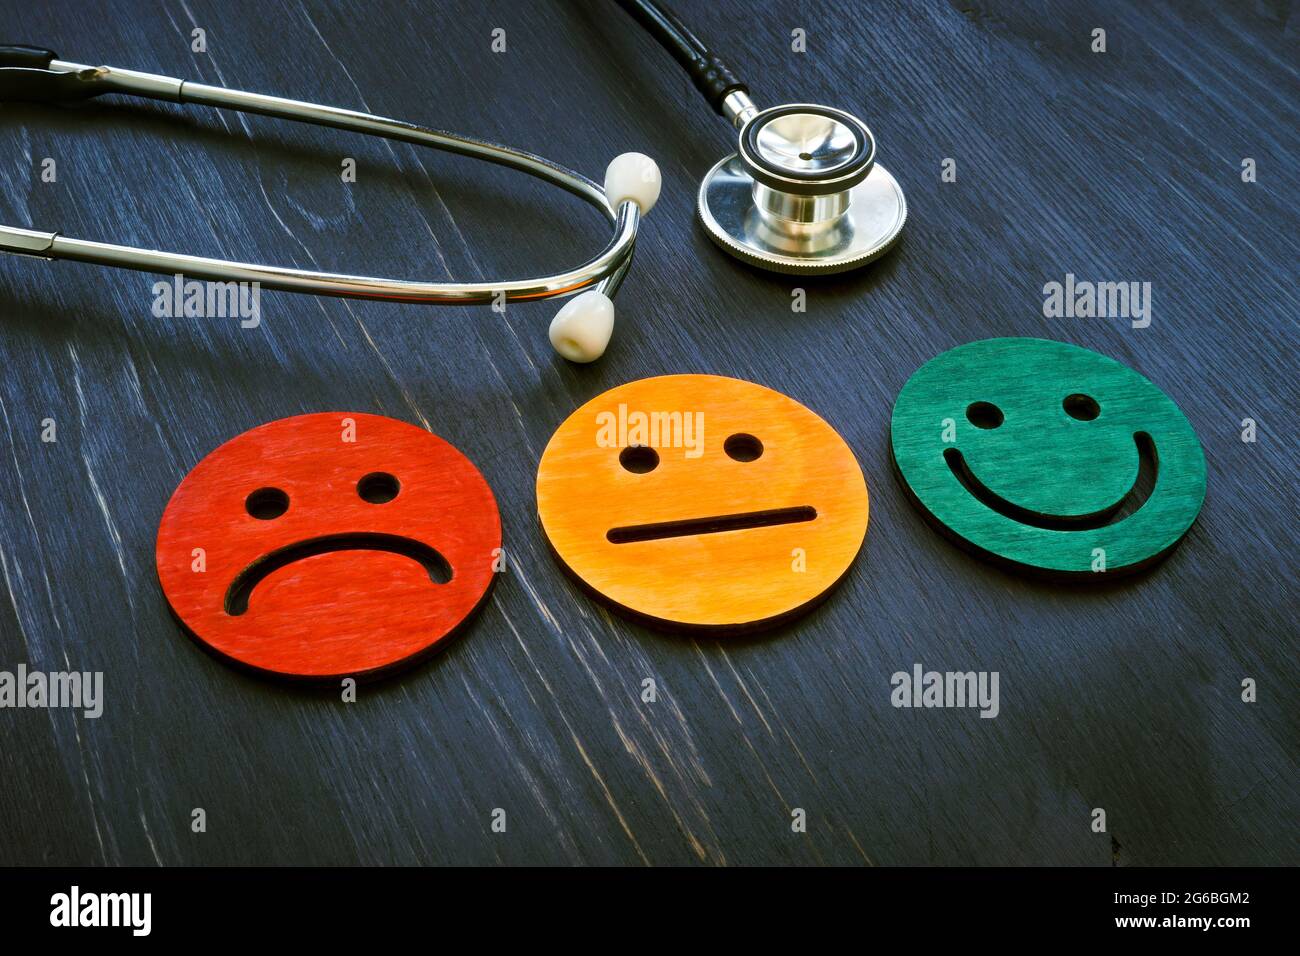 Konzept der Patientenerfahrung. Stethoskop und lächelte Gesichter für die Beurteilung des Krankenhausverbrauchers. Stockfoto